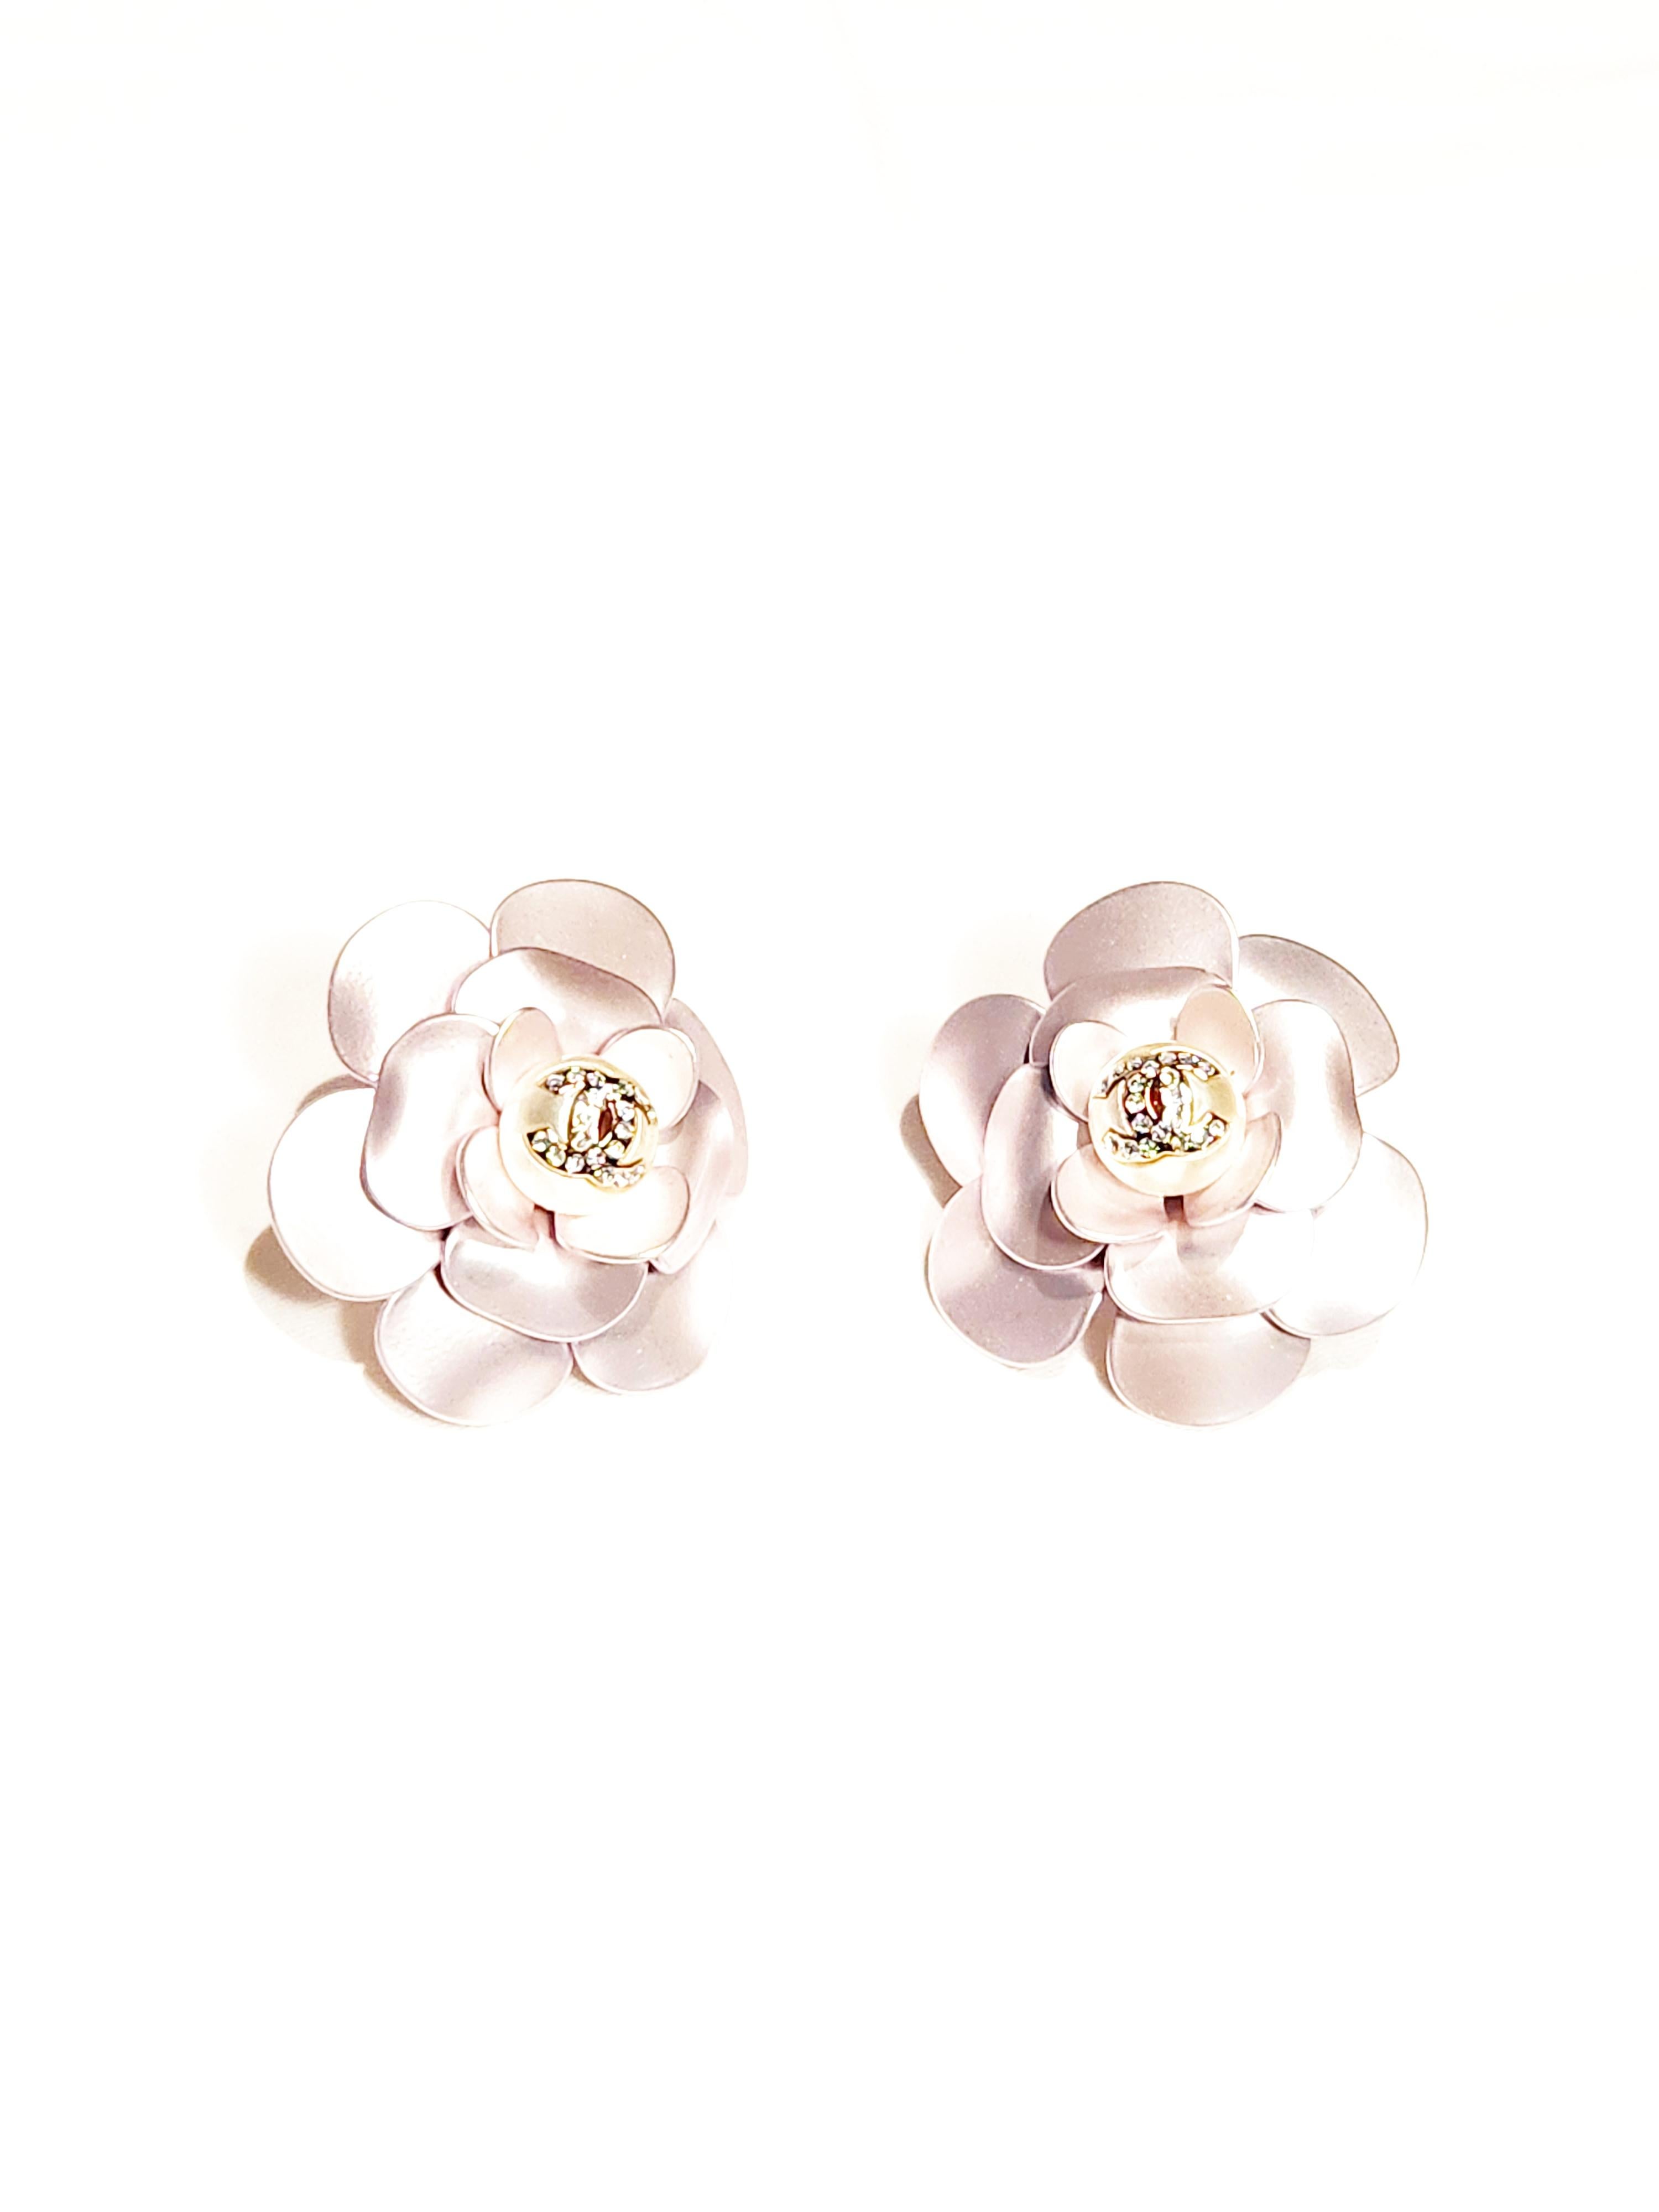 Contemporain Chanel CC grandes boucles d'oreilles à fleurs cloutées en métal Camellia